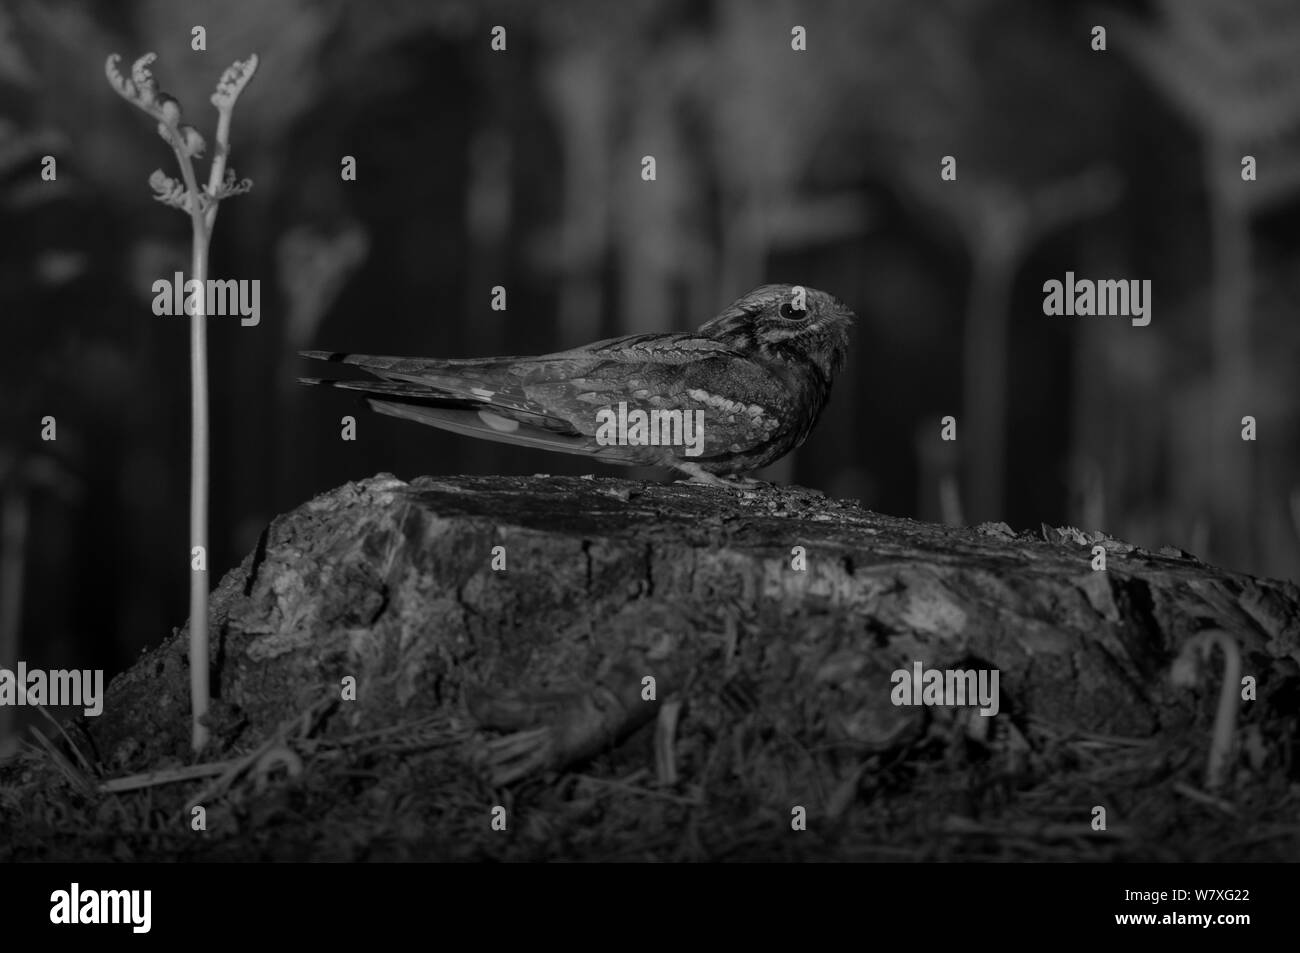 Pájaros trampa Imágenes de stock en blanco y negro - Alamy